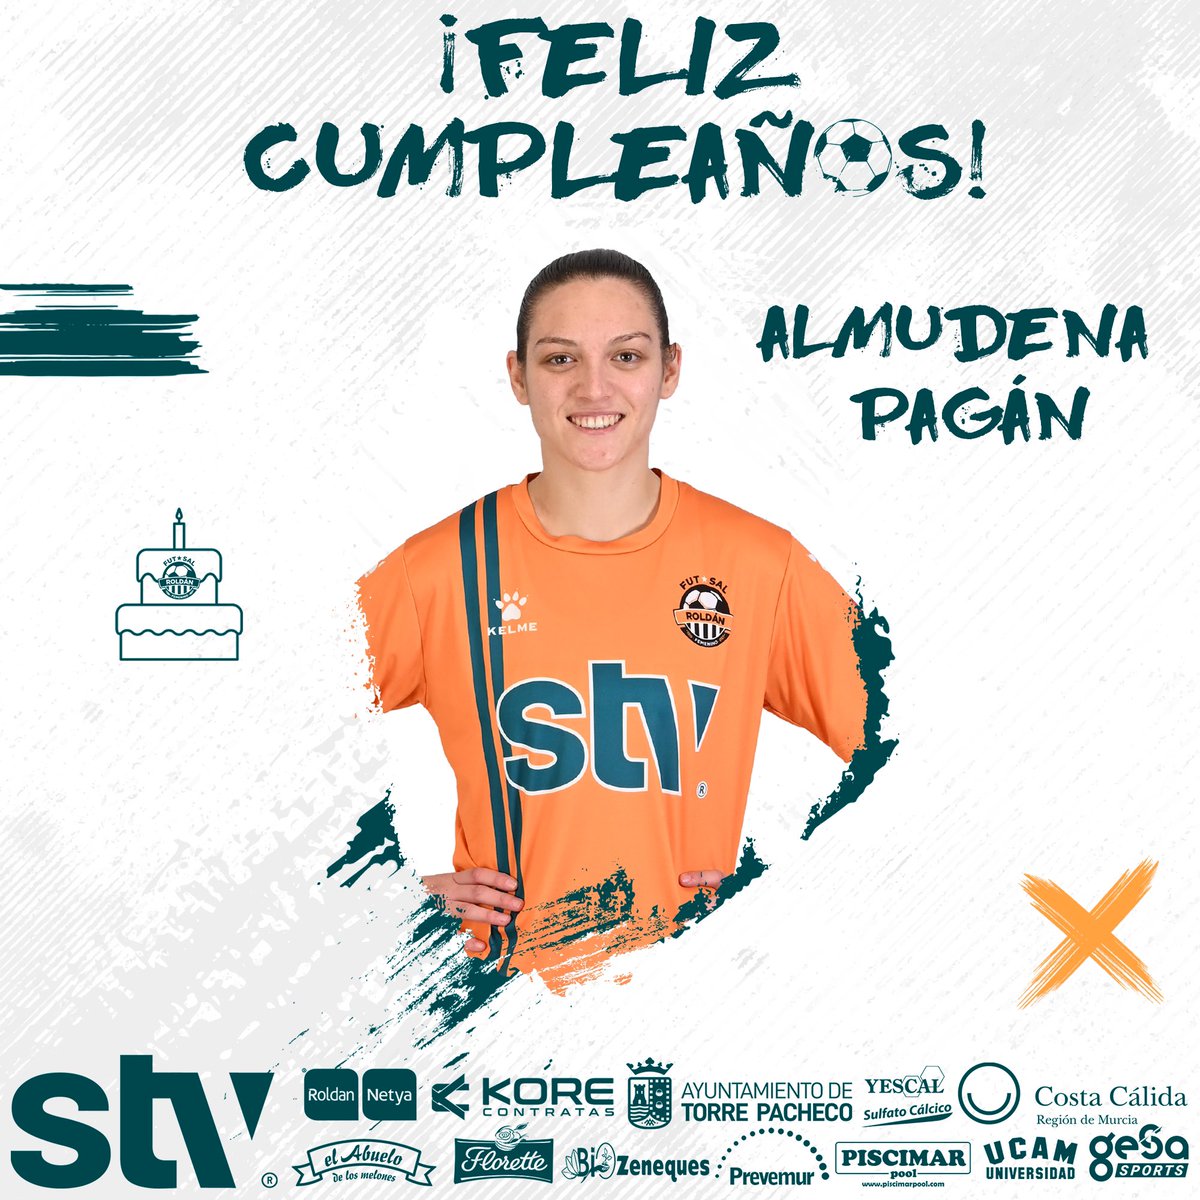 Hoy estamos de celebración 🥳 Nuestra portera @AlmudenaPagan21 cumple hoy 25 años👏 ¡Feliz cumpleaños Almudena! 🎂🎈 #STVRoldan